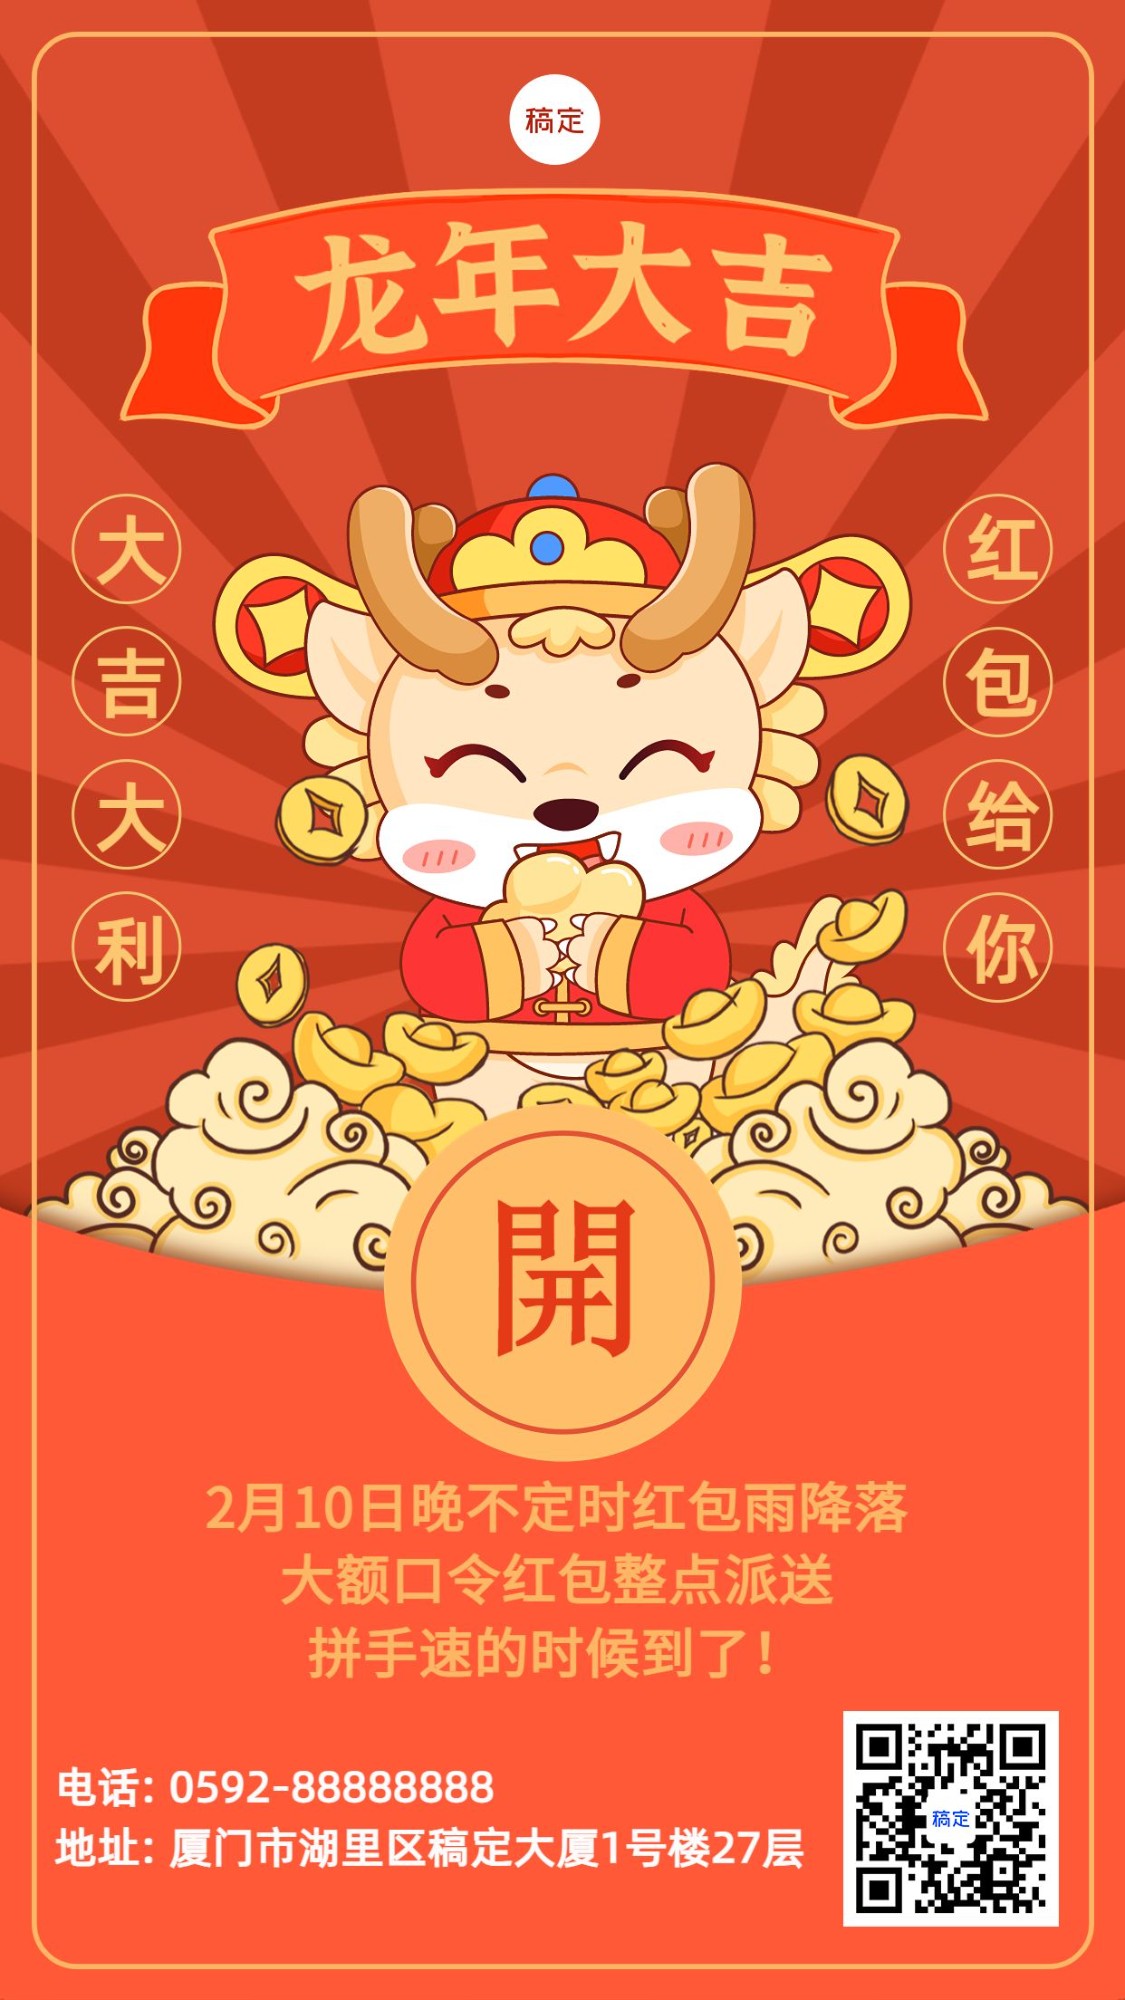 春节新年红包派送活动手机海报